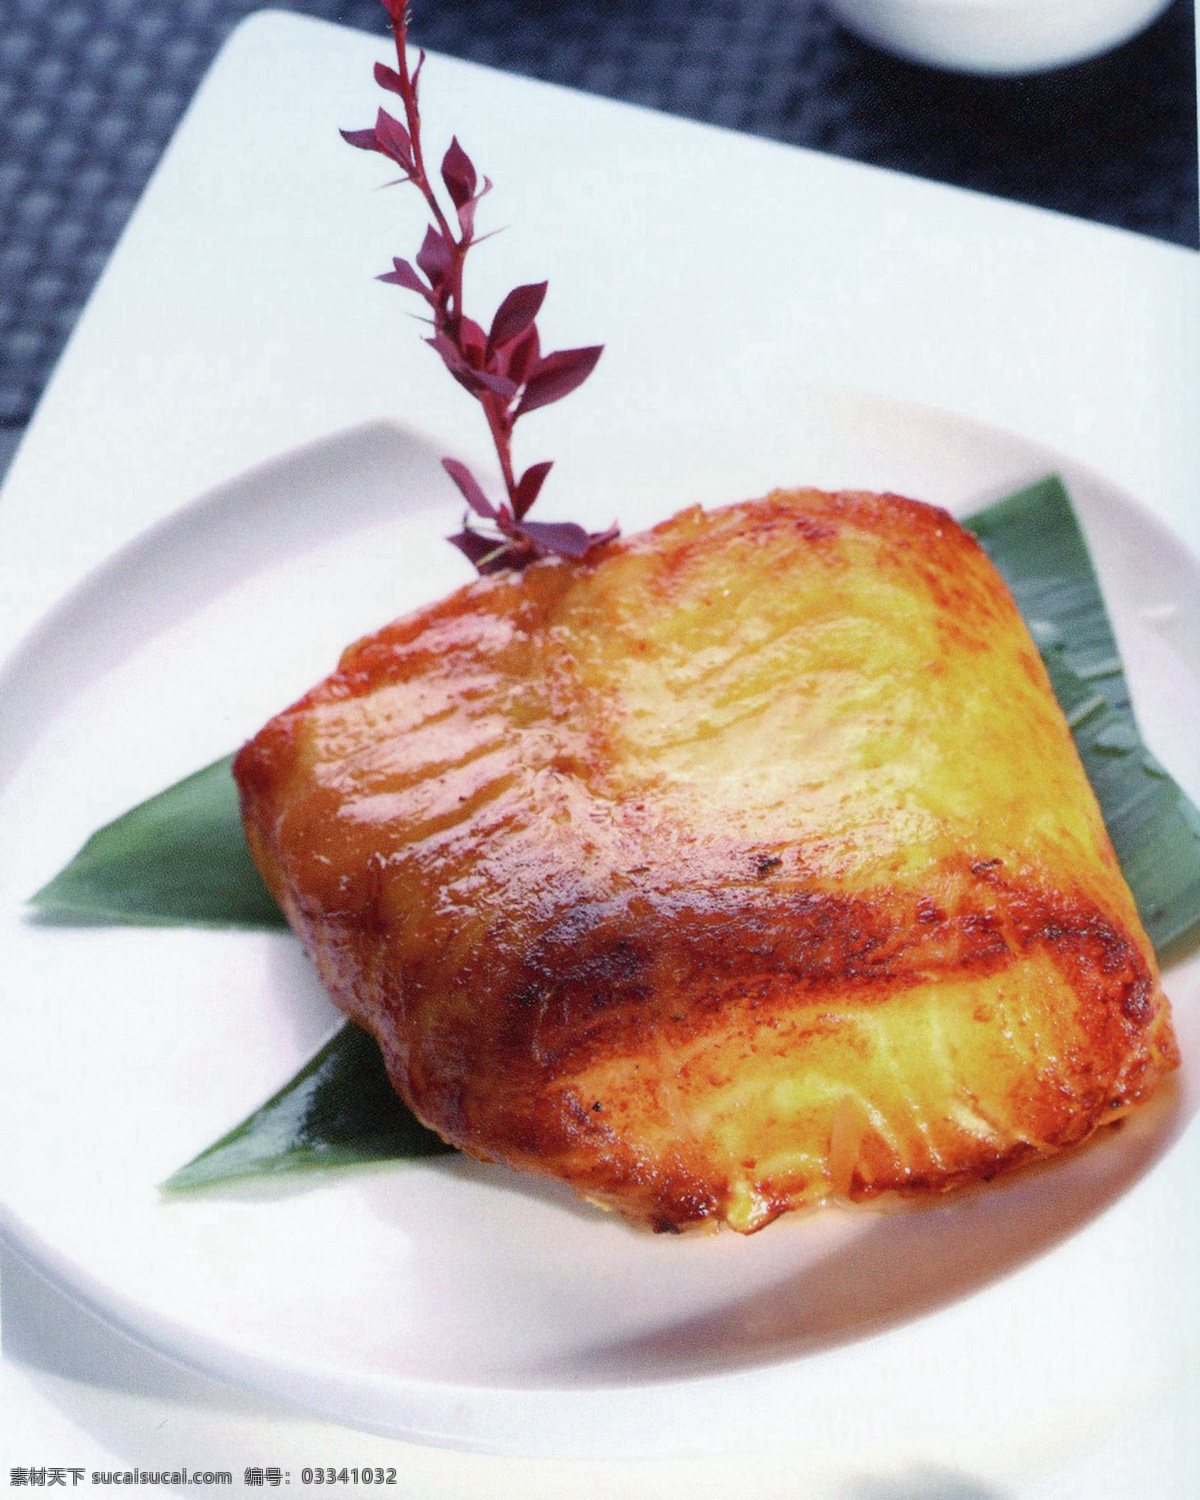 炭烧银鳕鱼 美食 传统美食 餐饮美食 高清菜谱用图